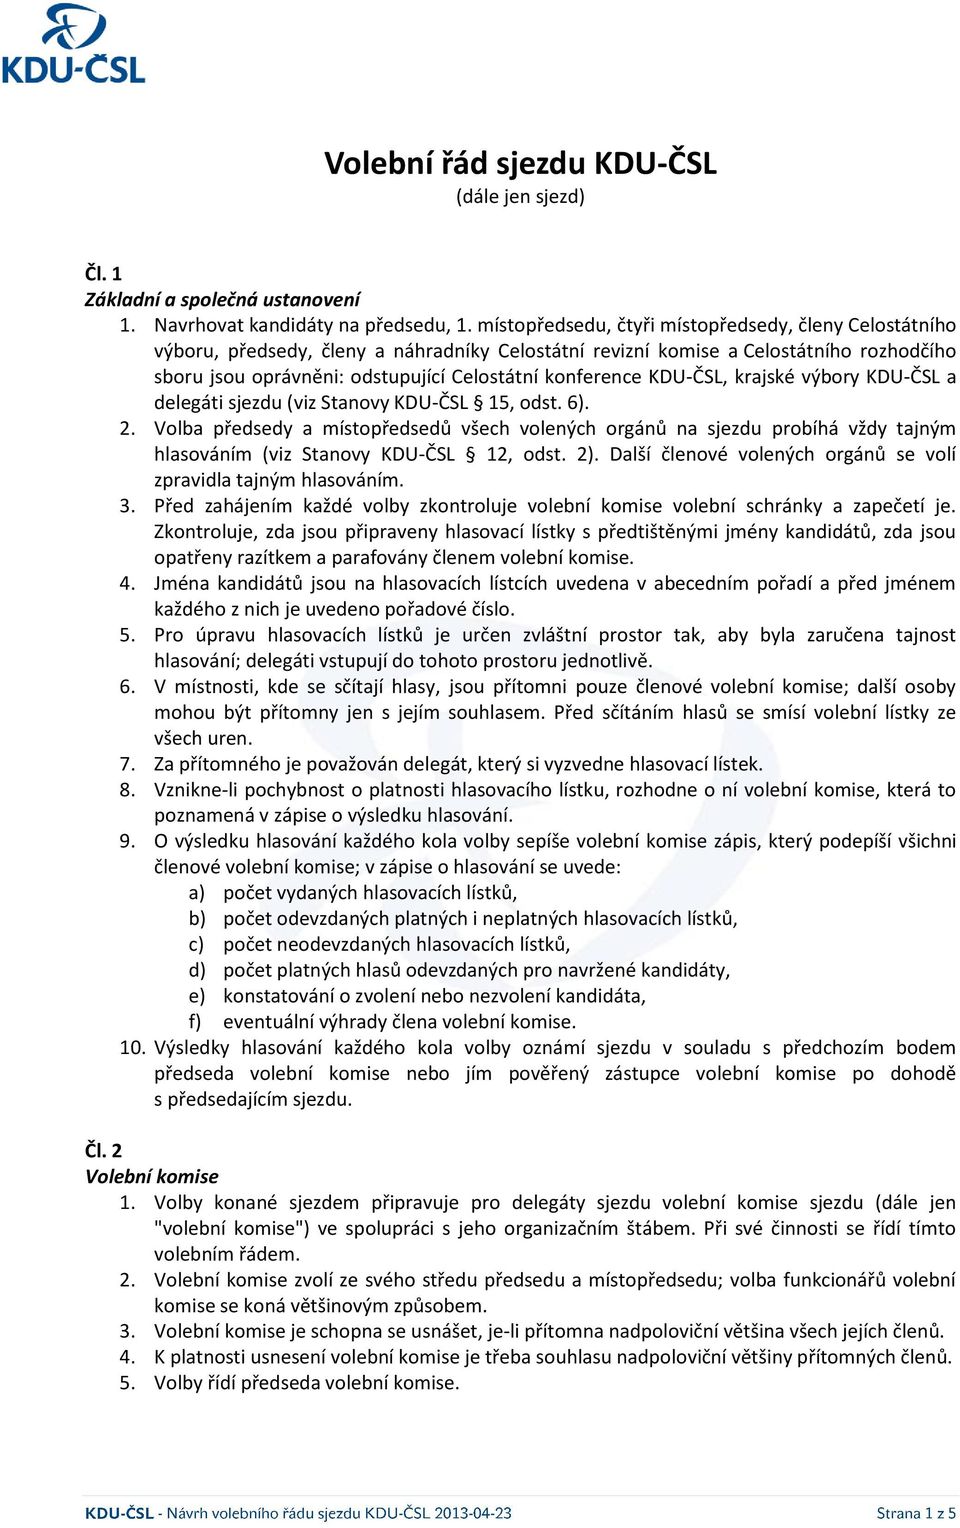 KDU-ČSL, krajské výbory KDU-ČSL a delegáti sjezdu (viz Stanovy KDU-ČSL 15, odst. 6). 2.